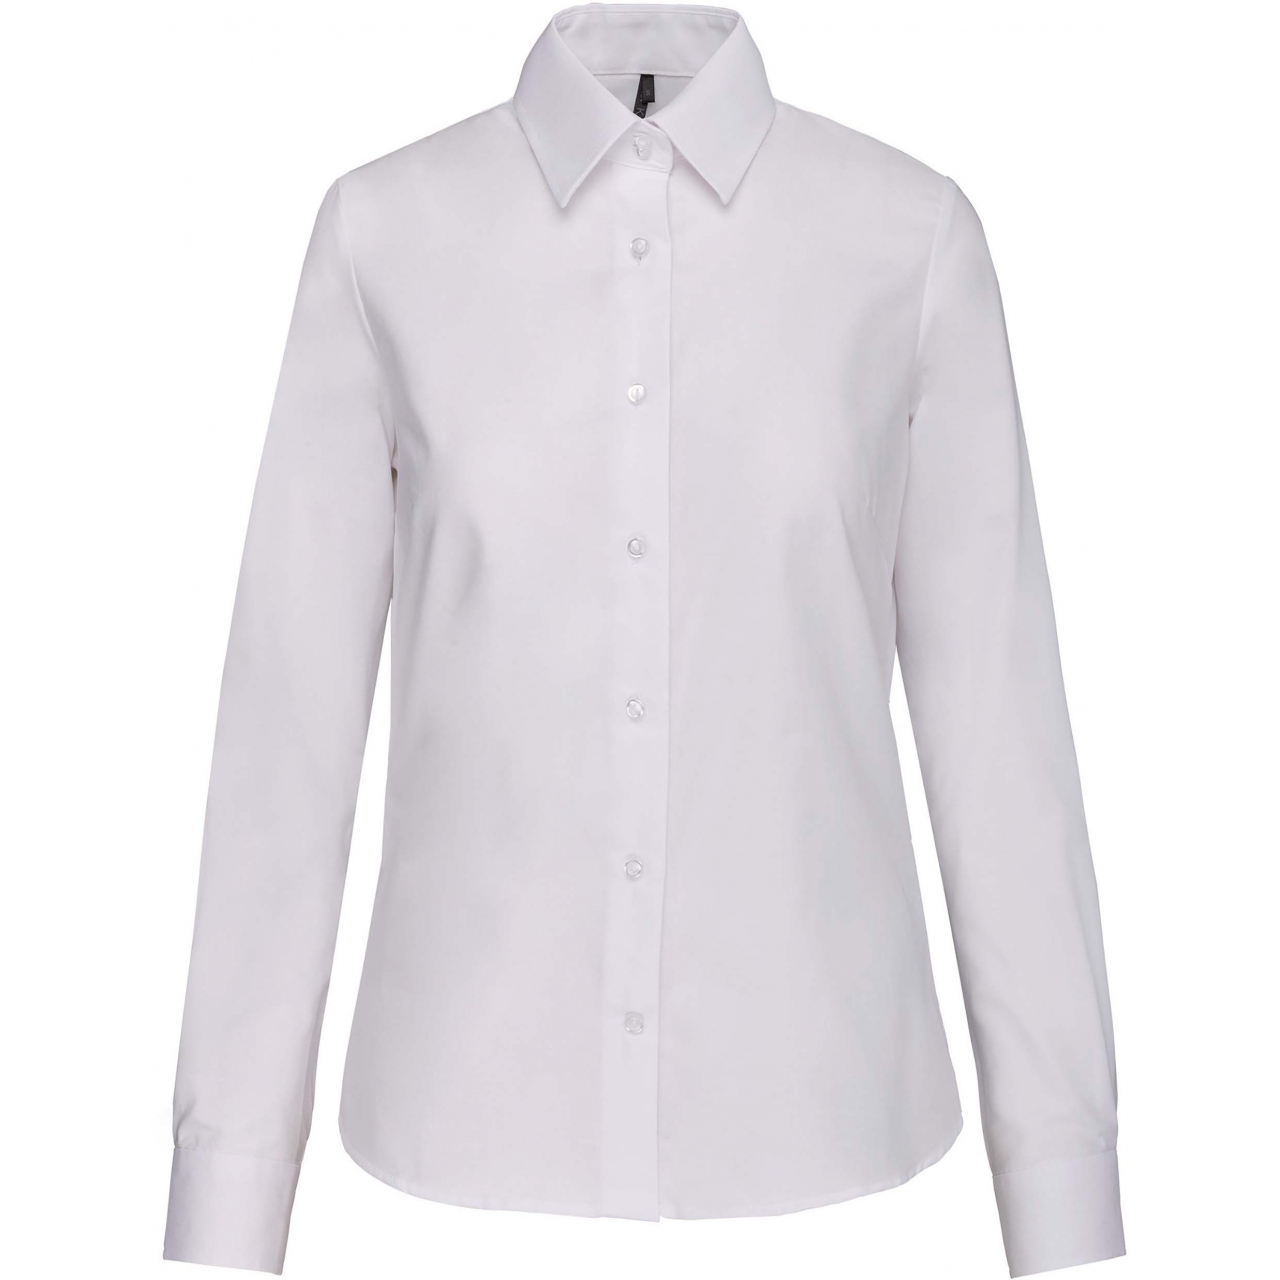 Košile dámská s dlouhým rukávem Kariban Oxford - bílá, XXL